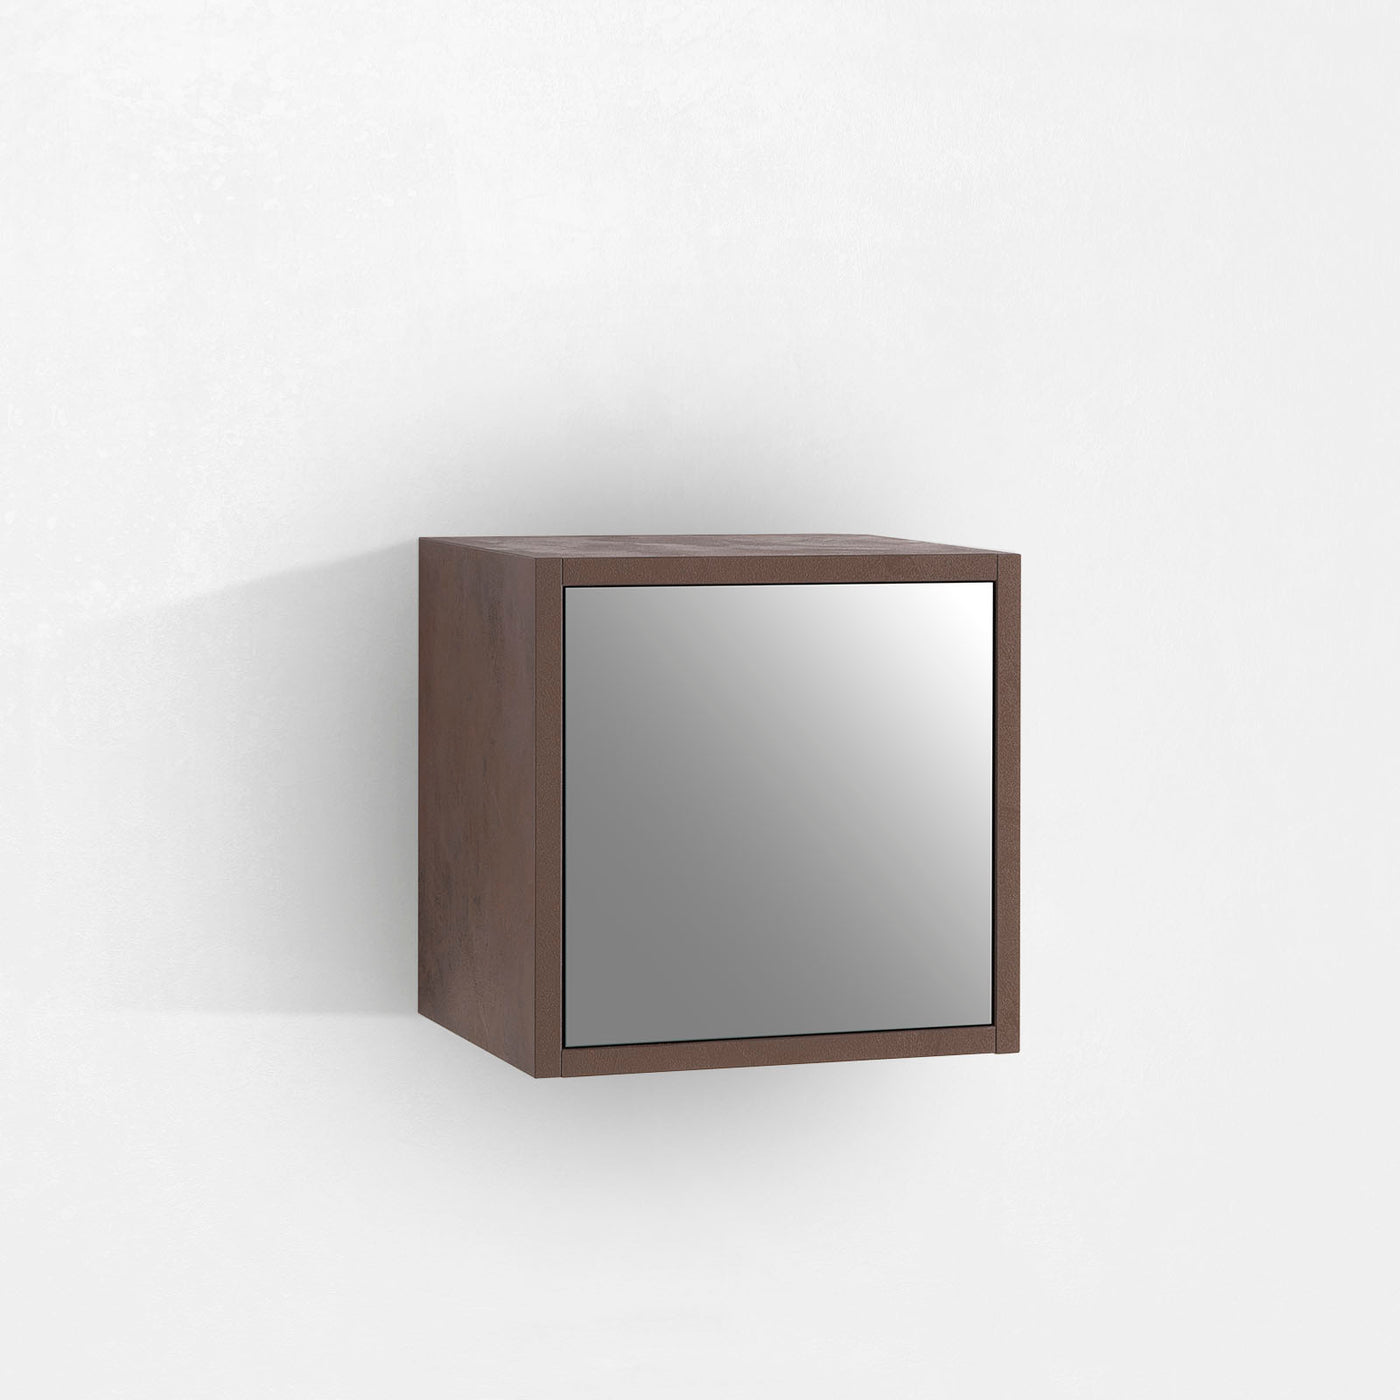 1 door wall unit w/mirror OSLO stone brown